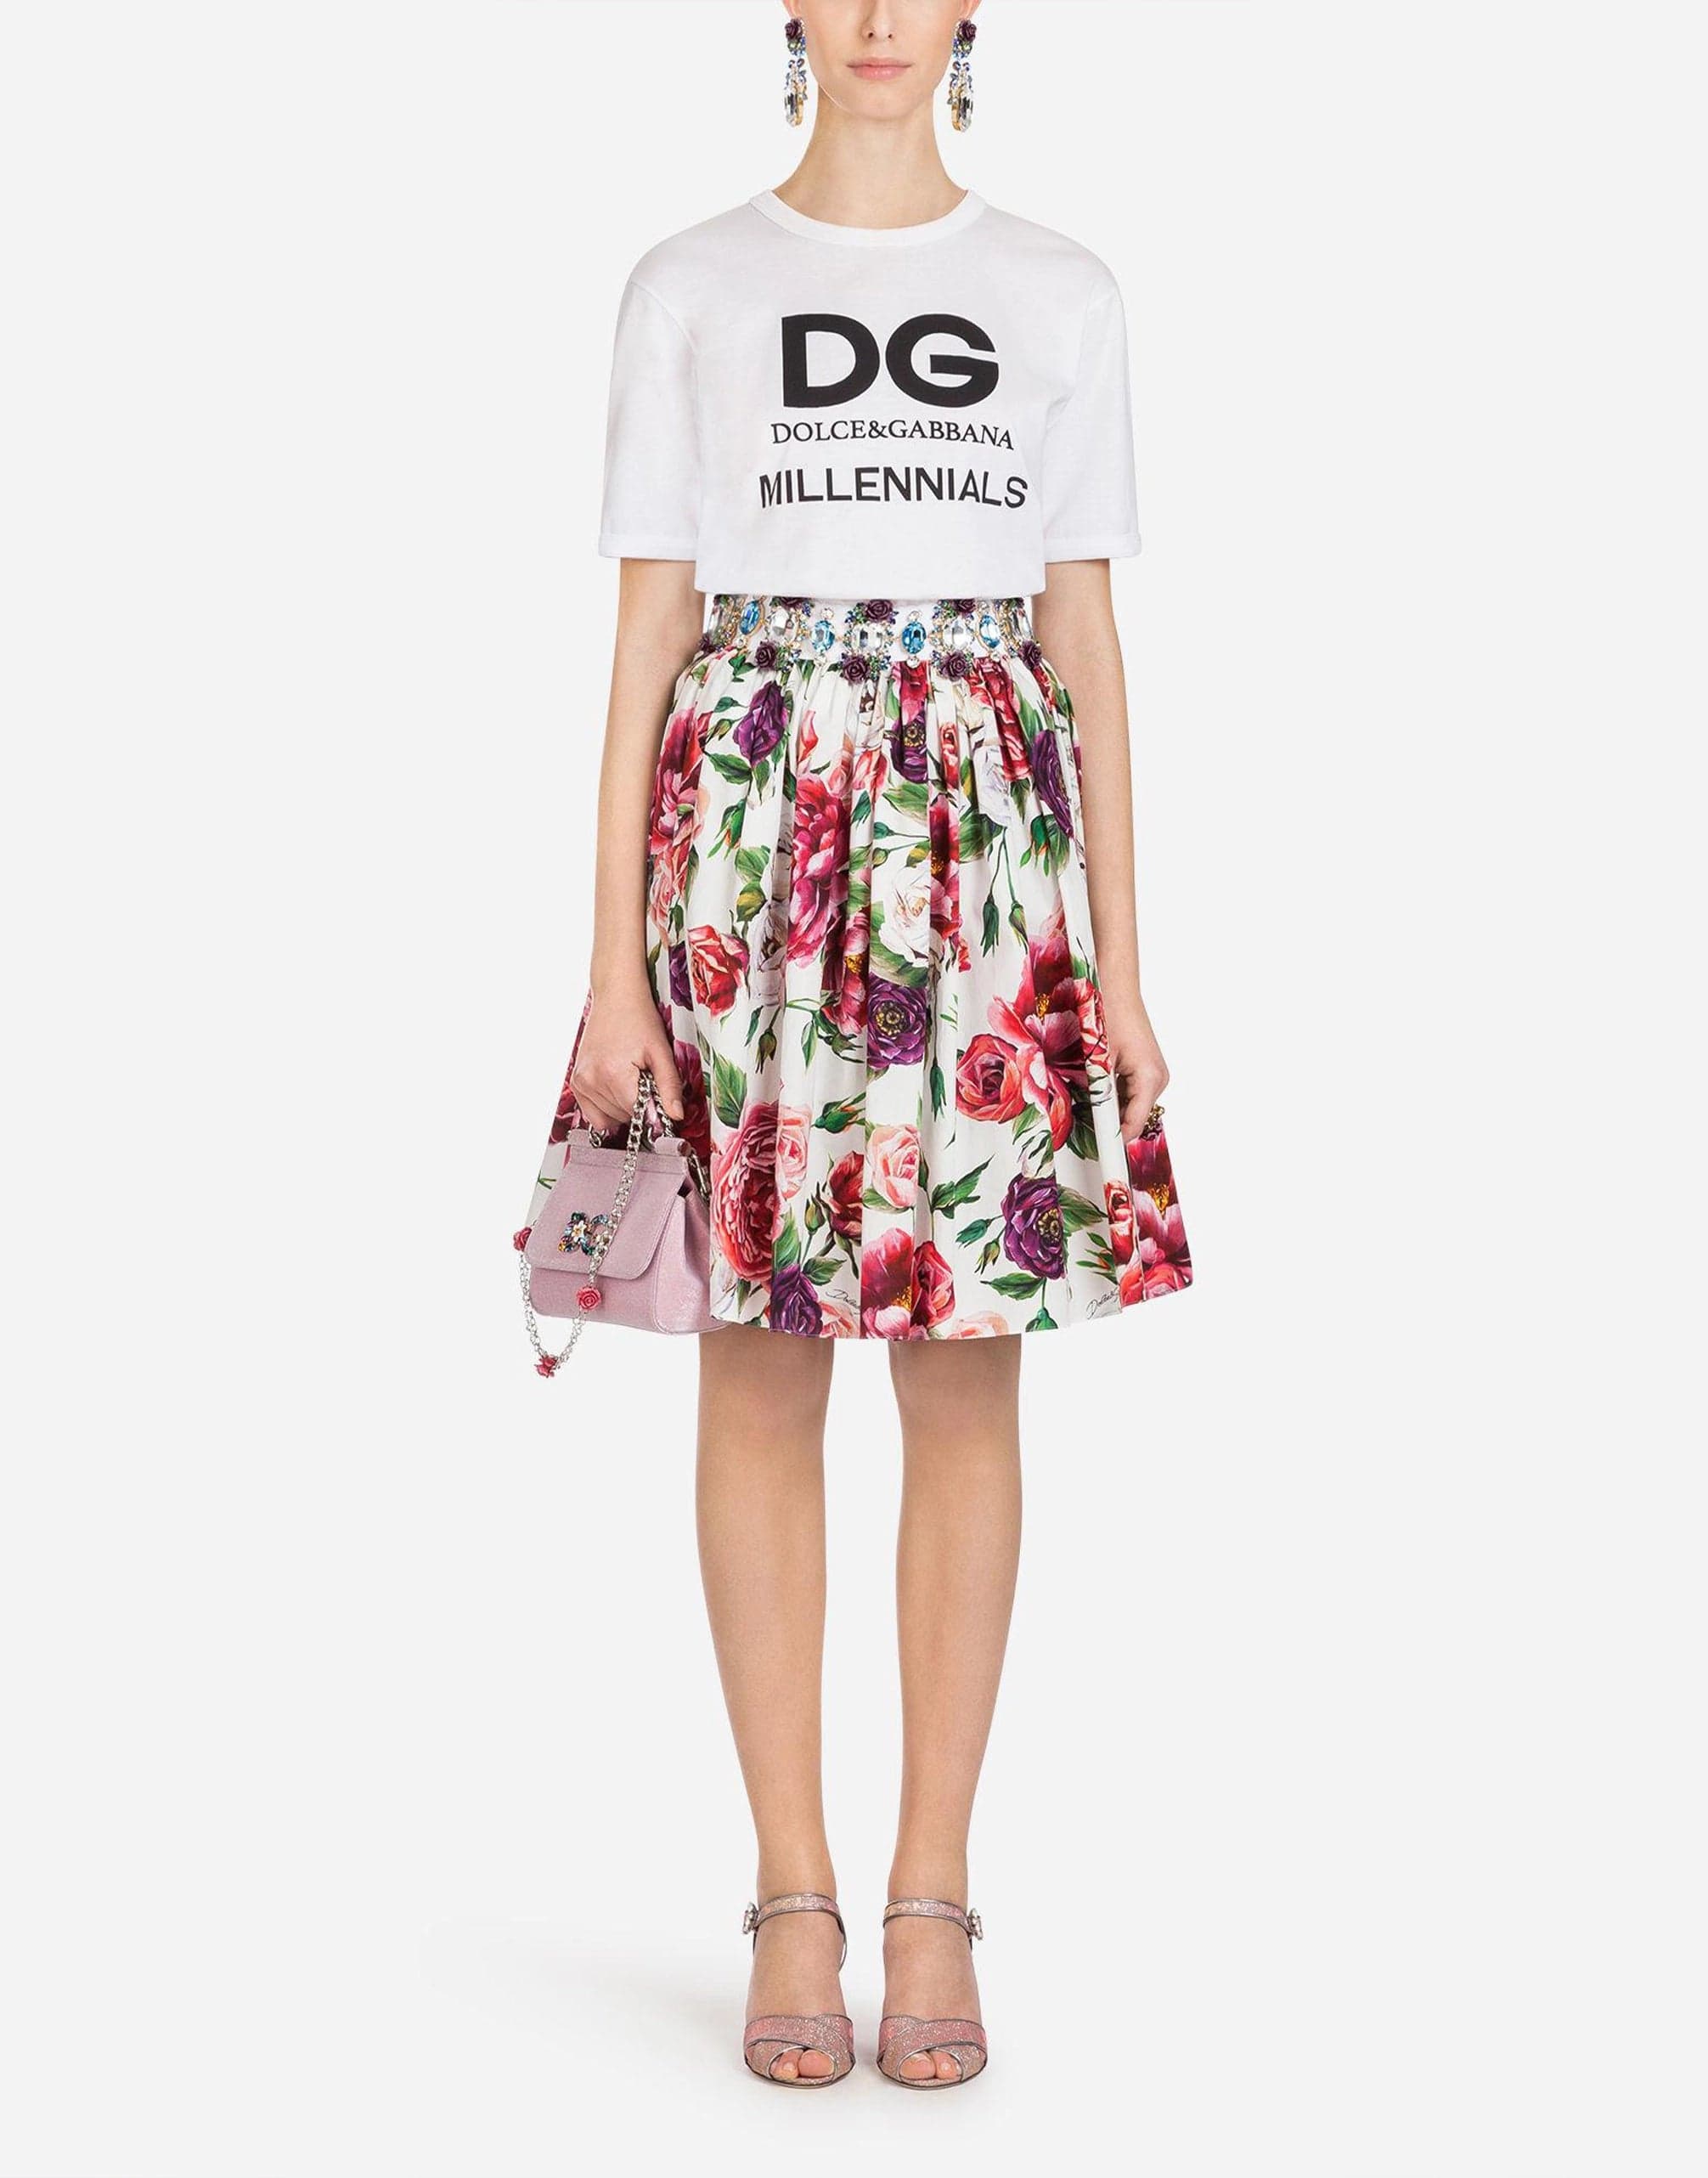 Dolce & Gabbana DG Millennials Print T-Shirt